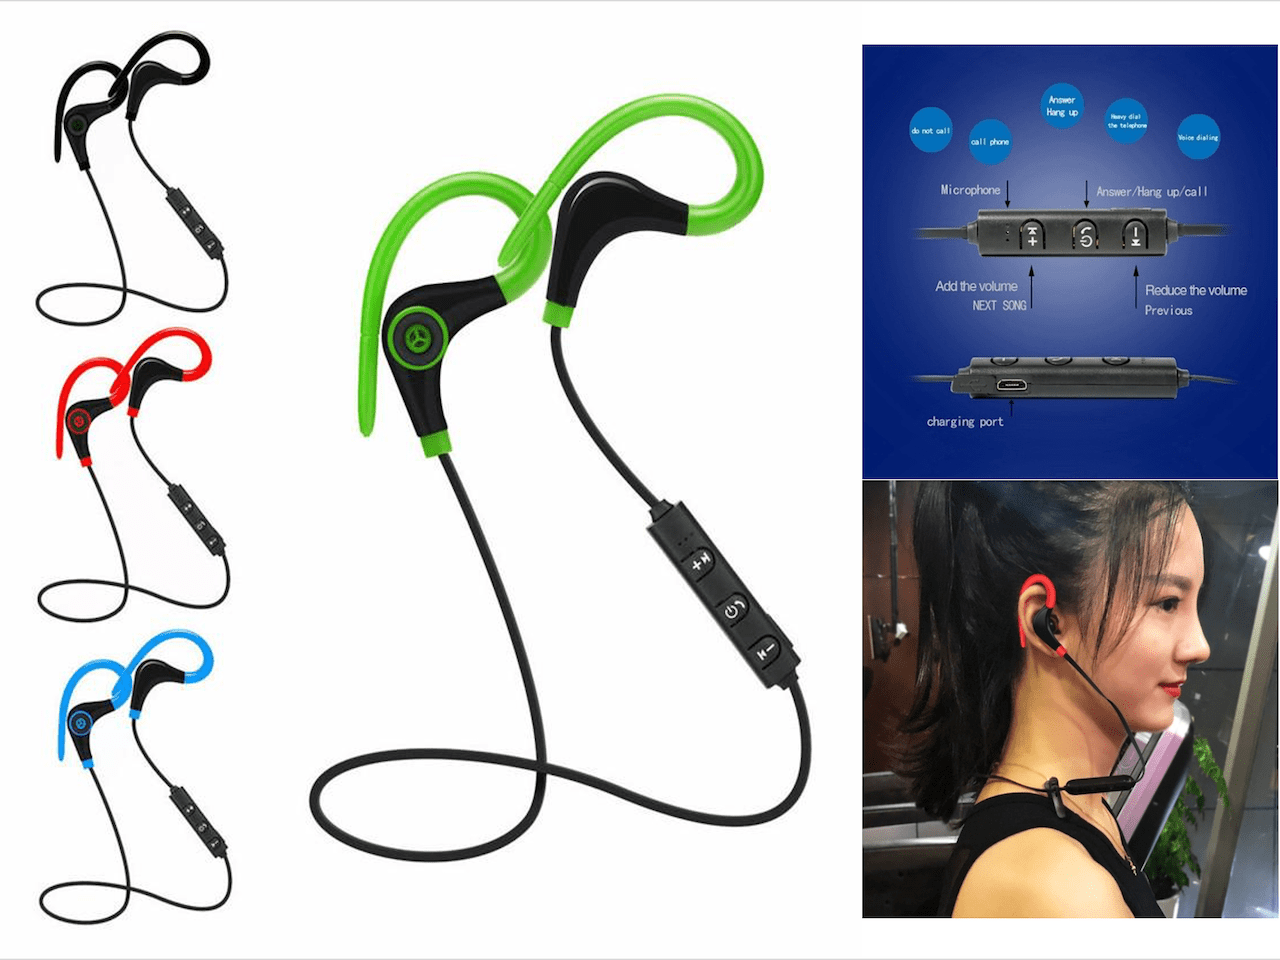 Auriculares inalámbricos con cable de banda para el cuello - Auriculares  TWS Bluetooth 4.2 Auriculares Auriculares Auriculares Plata